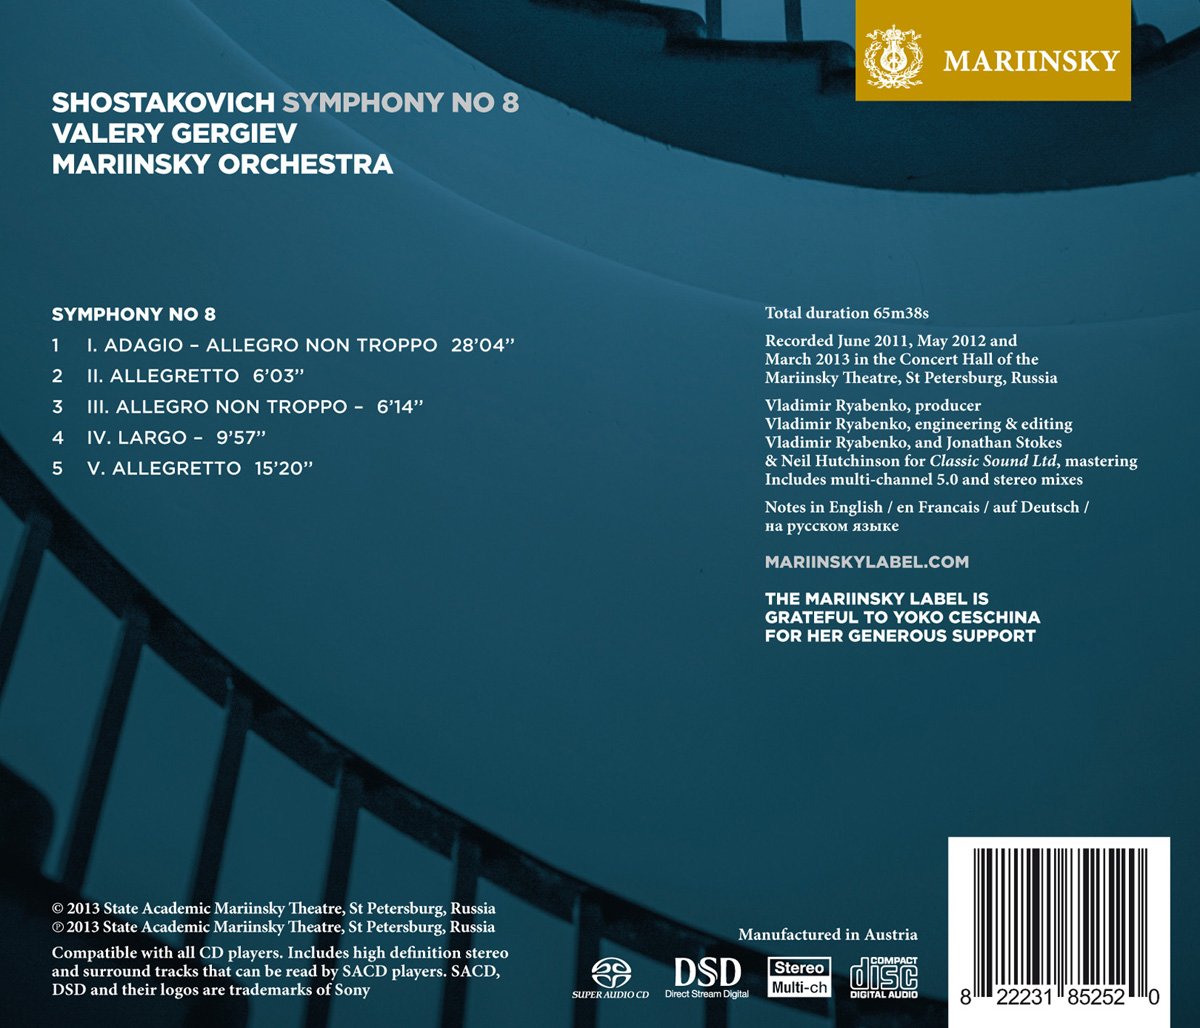 Shostakovich: Symphony No. 8 - VALERY GERGIEV, MARIINSKY ORCHESTRA (Hybrid SACD)